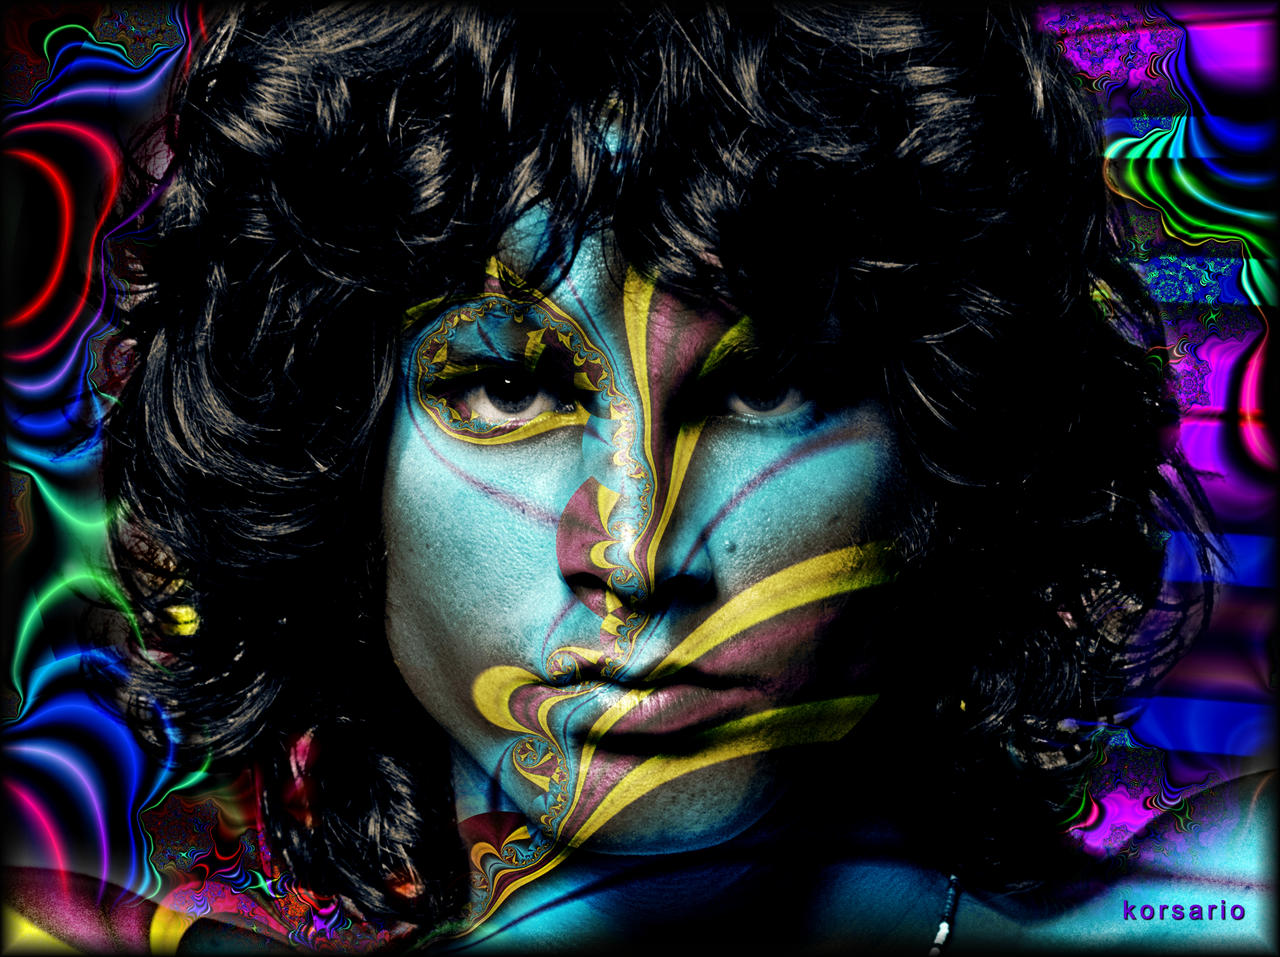 The spirit of Jim Morrison